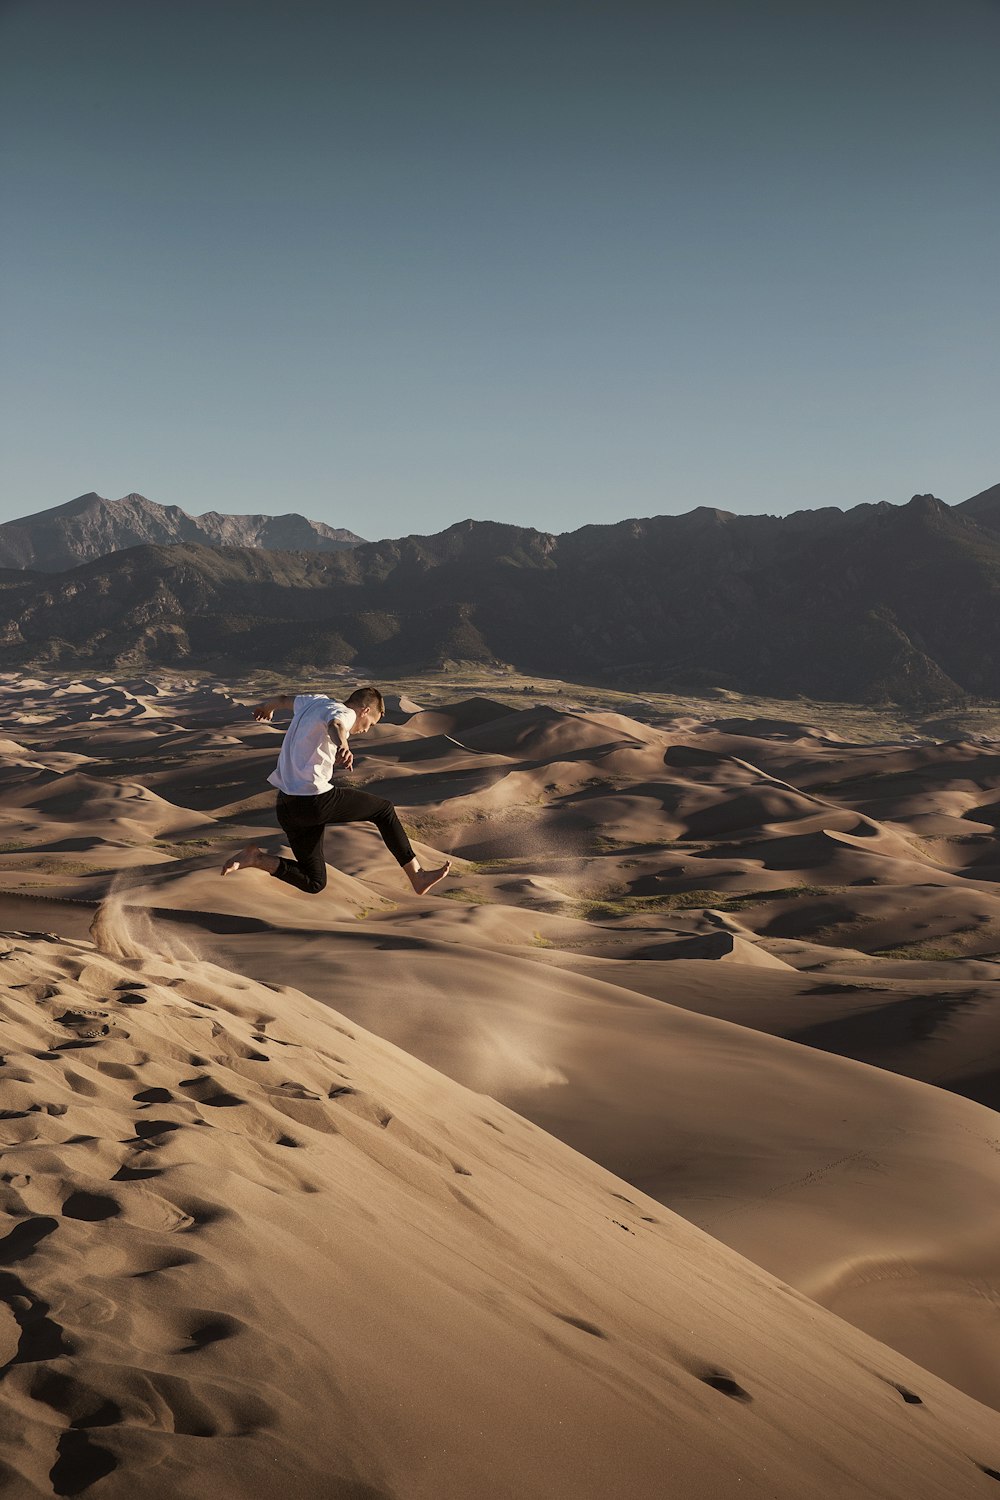 砂漠に飛び跳ねる男